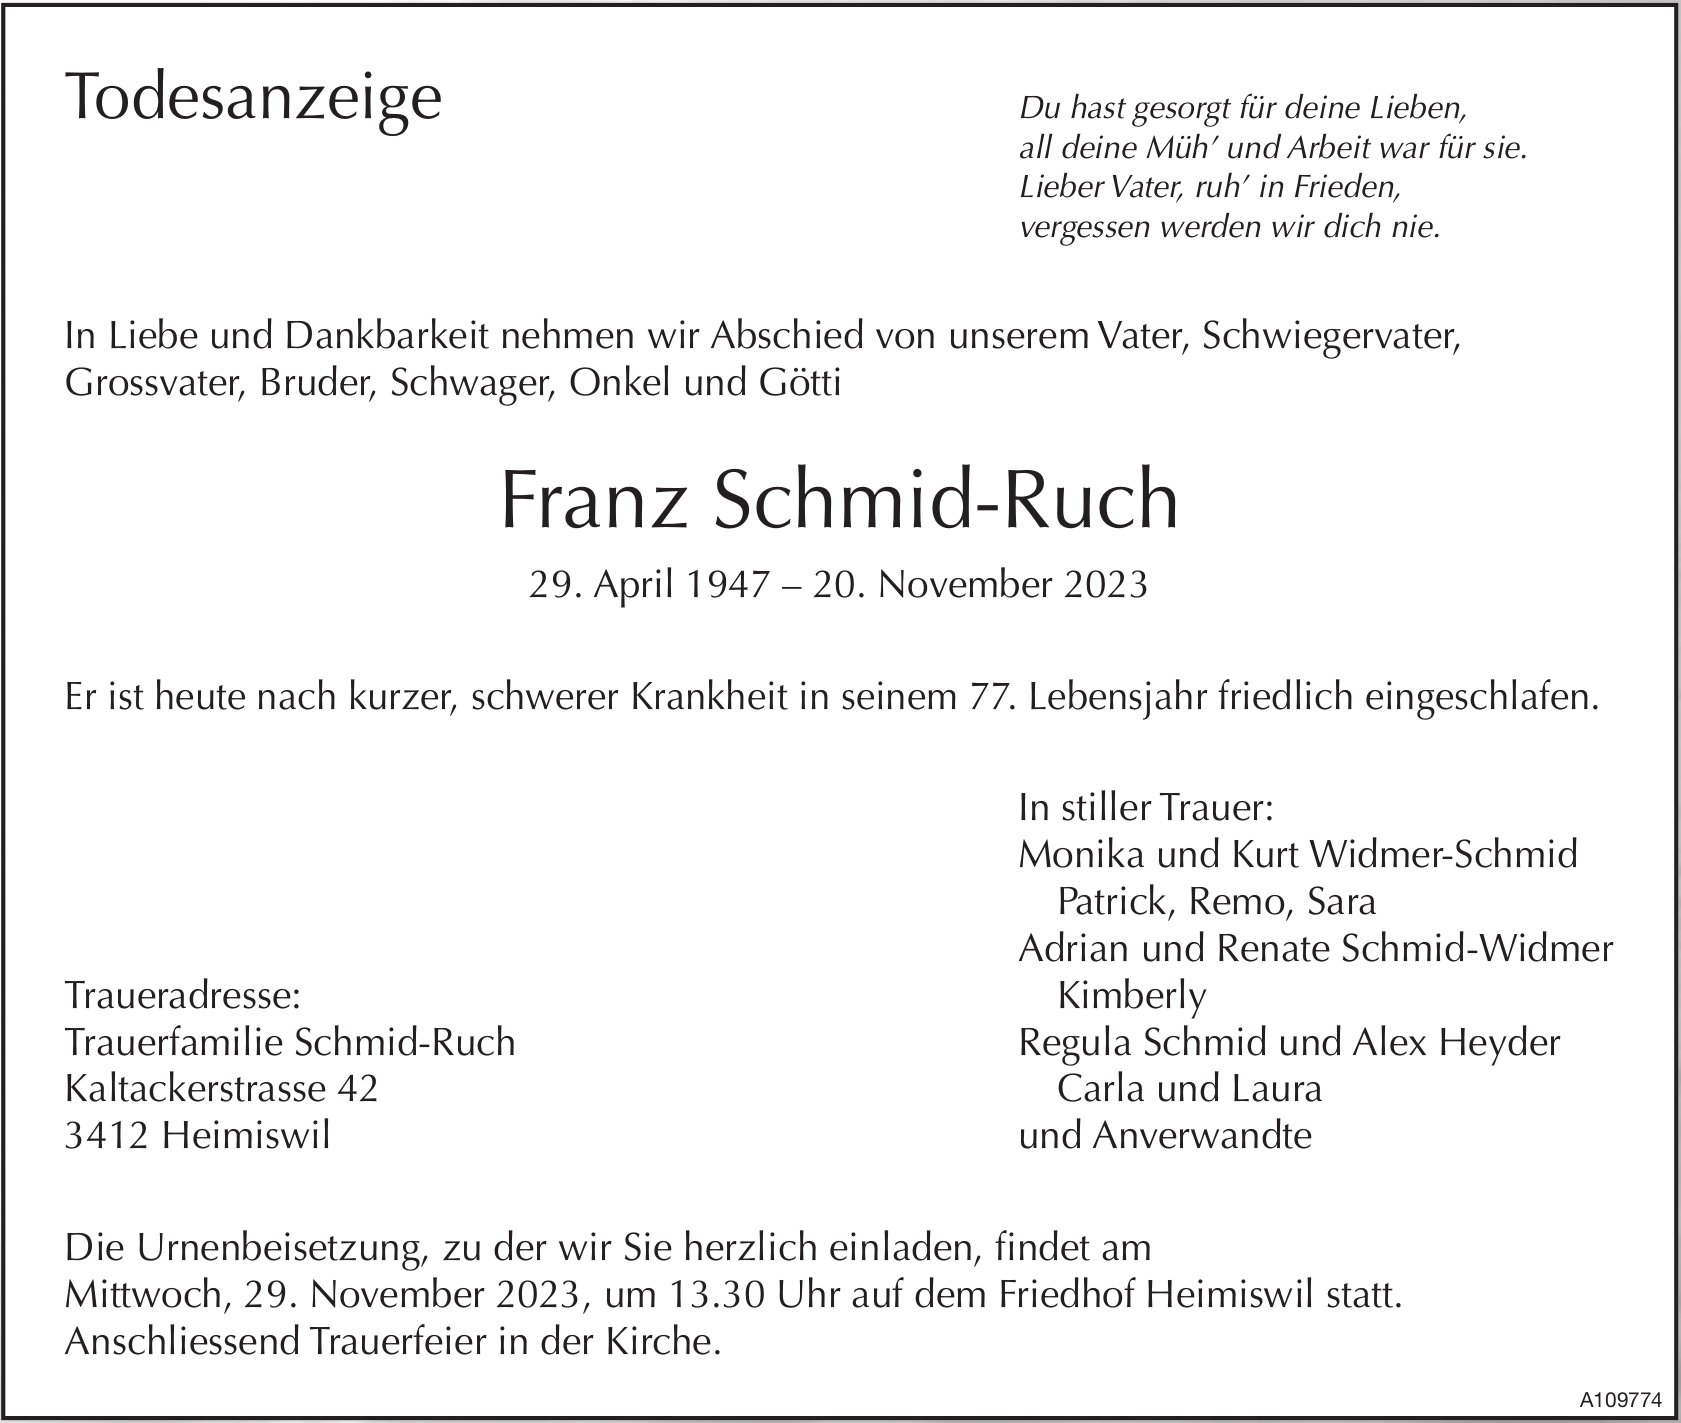 Franz Schmid-Ruch, November 2023 / TA